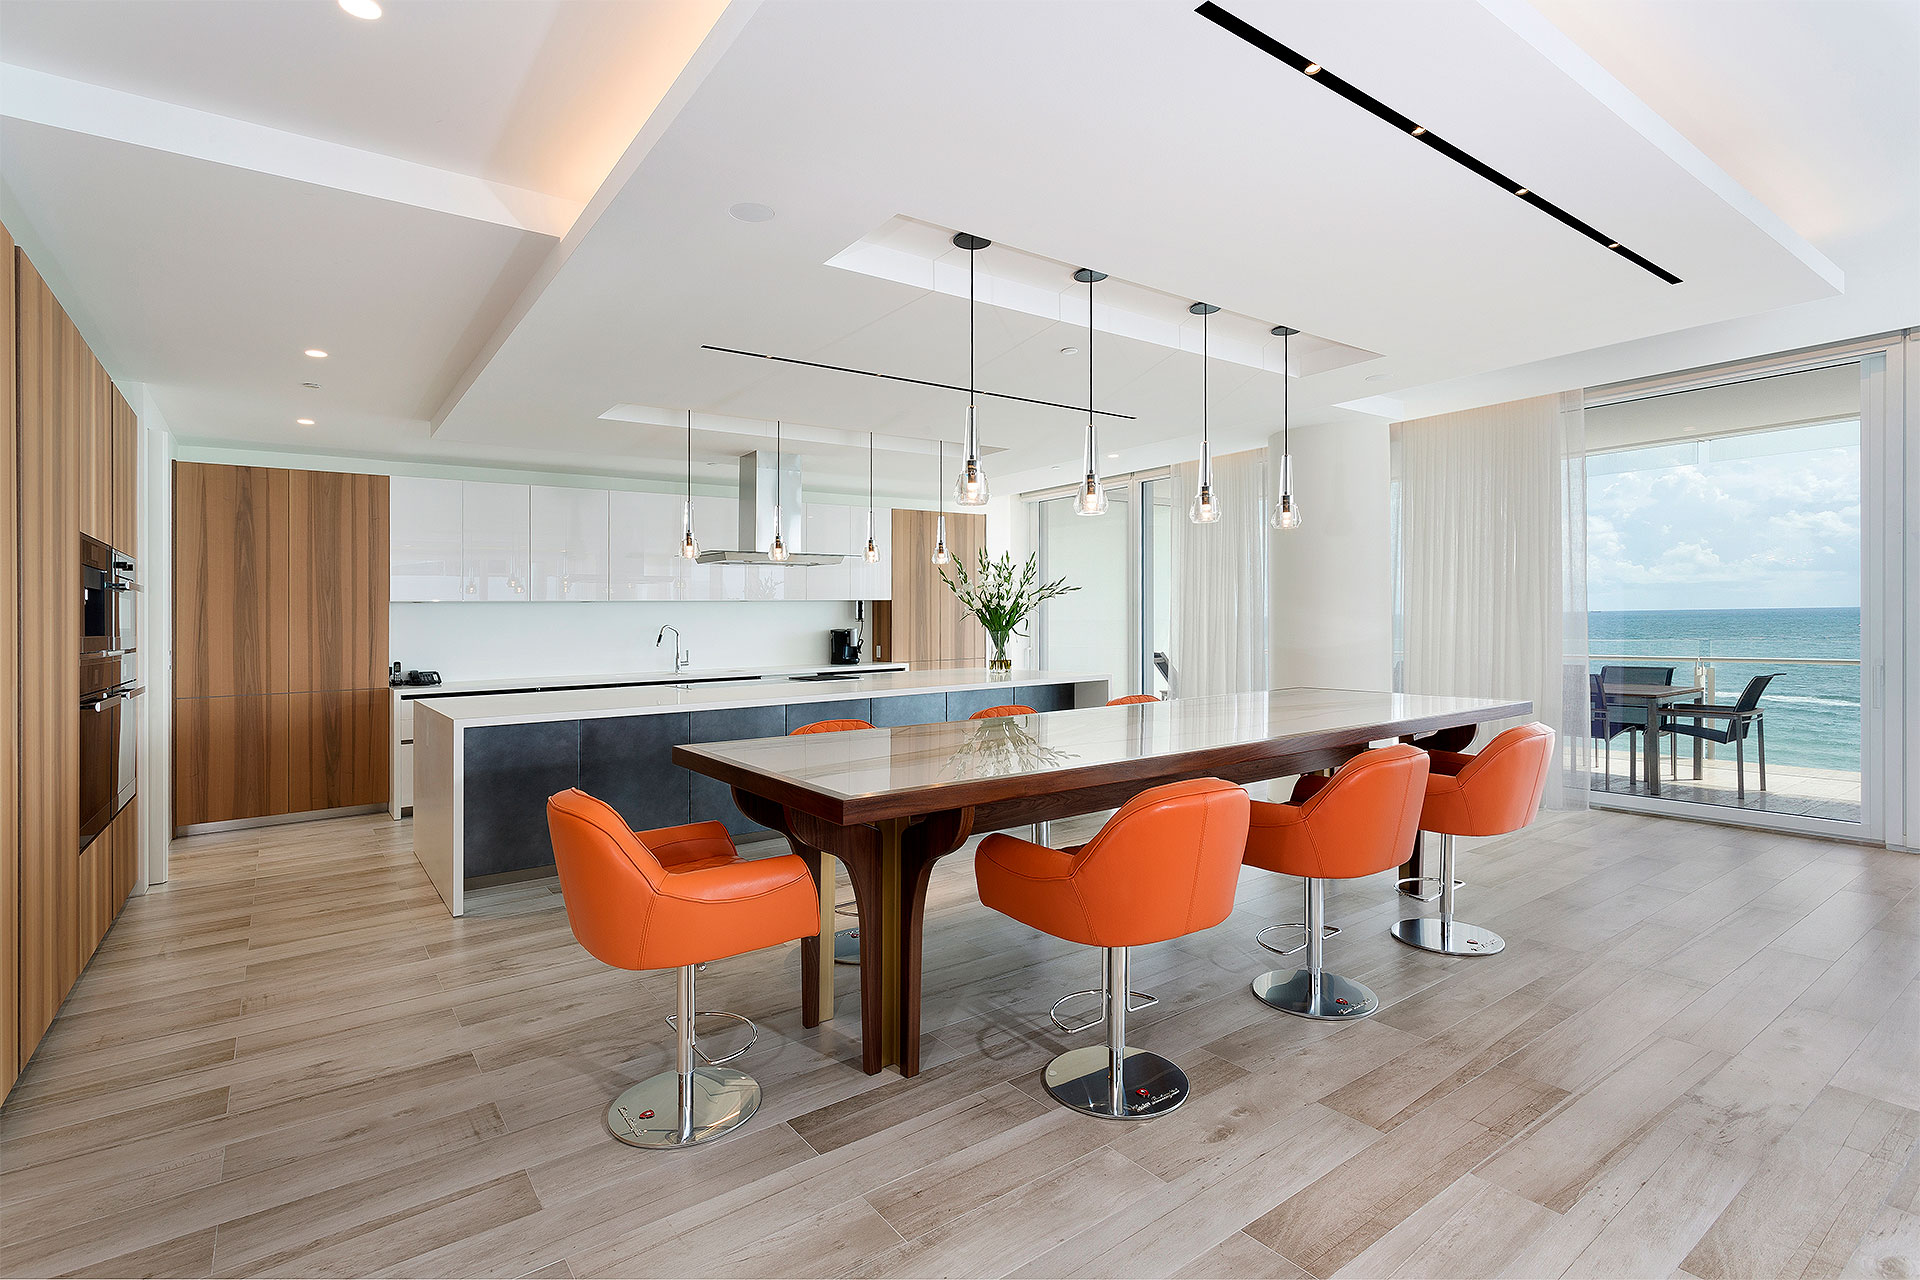 Luxury Open floor plan kitchen & dining room overlooking the ocean in Florida by Woolems Luxury Builders